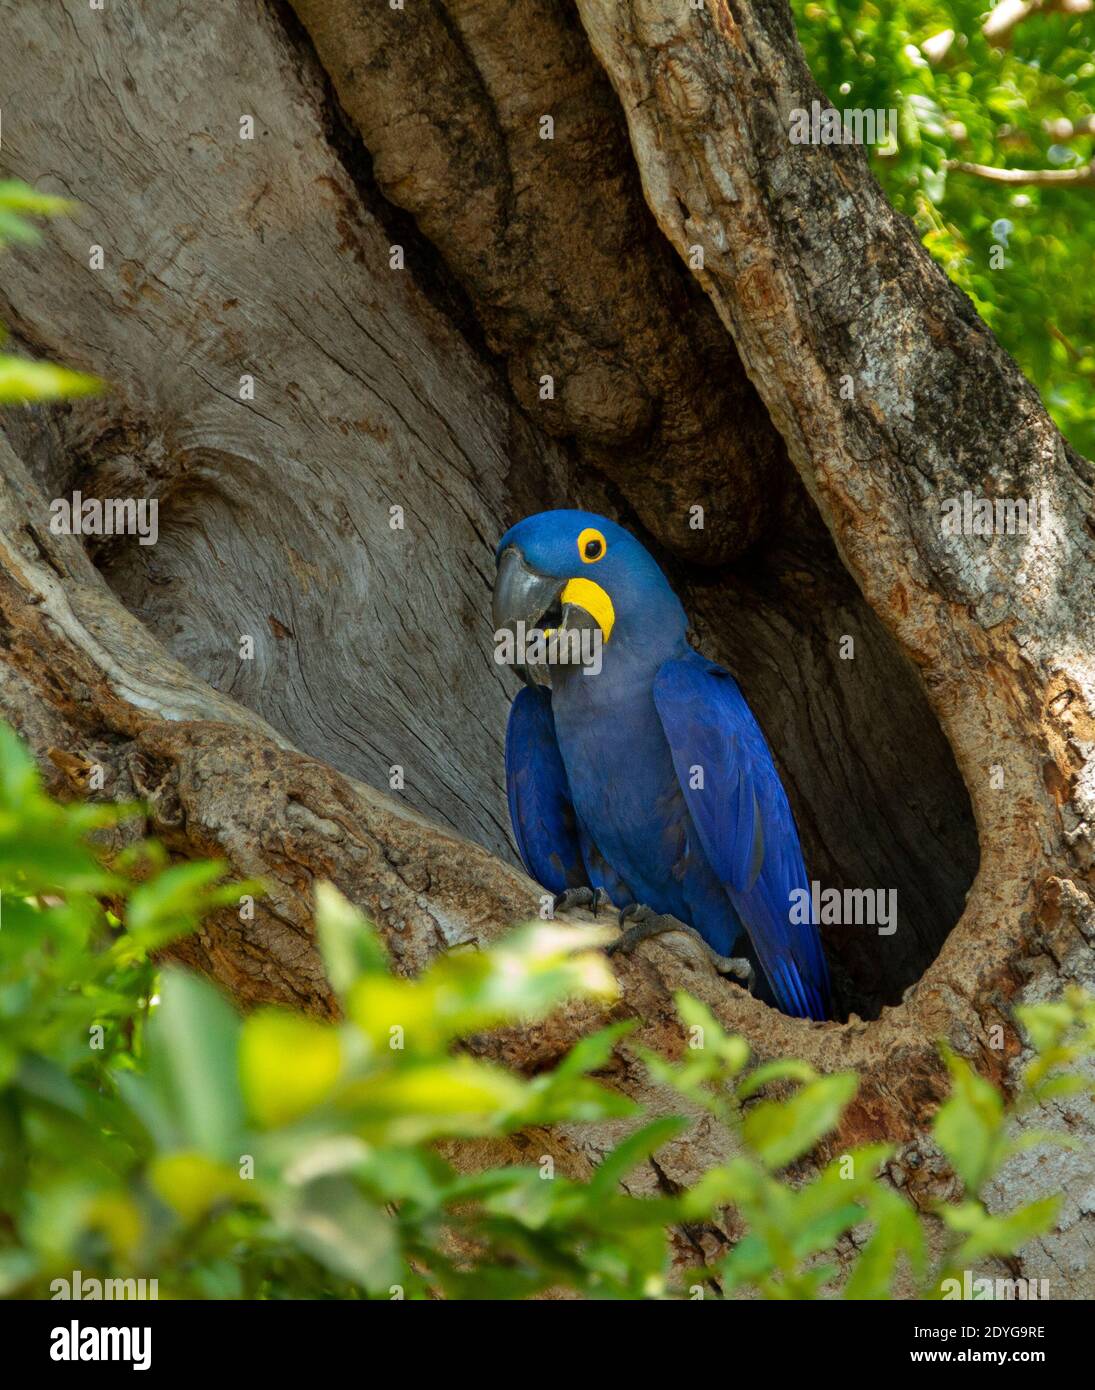 Jacinthe Macaw (Anodorhynchus hyacinthinus) dans un nid d'arbre creux Banque D'Images